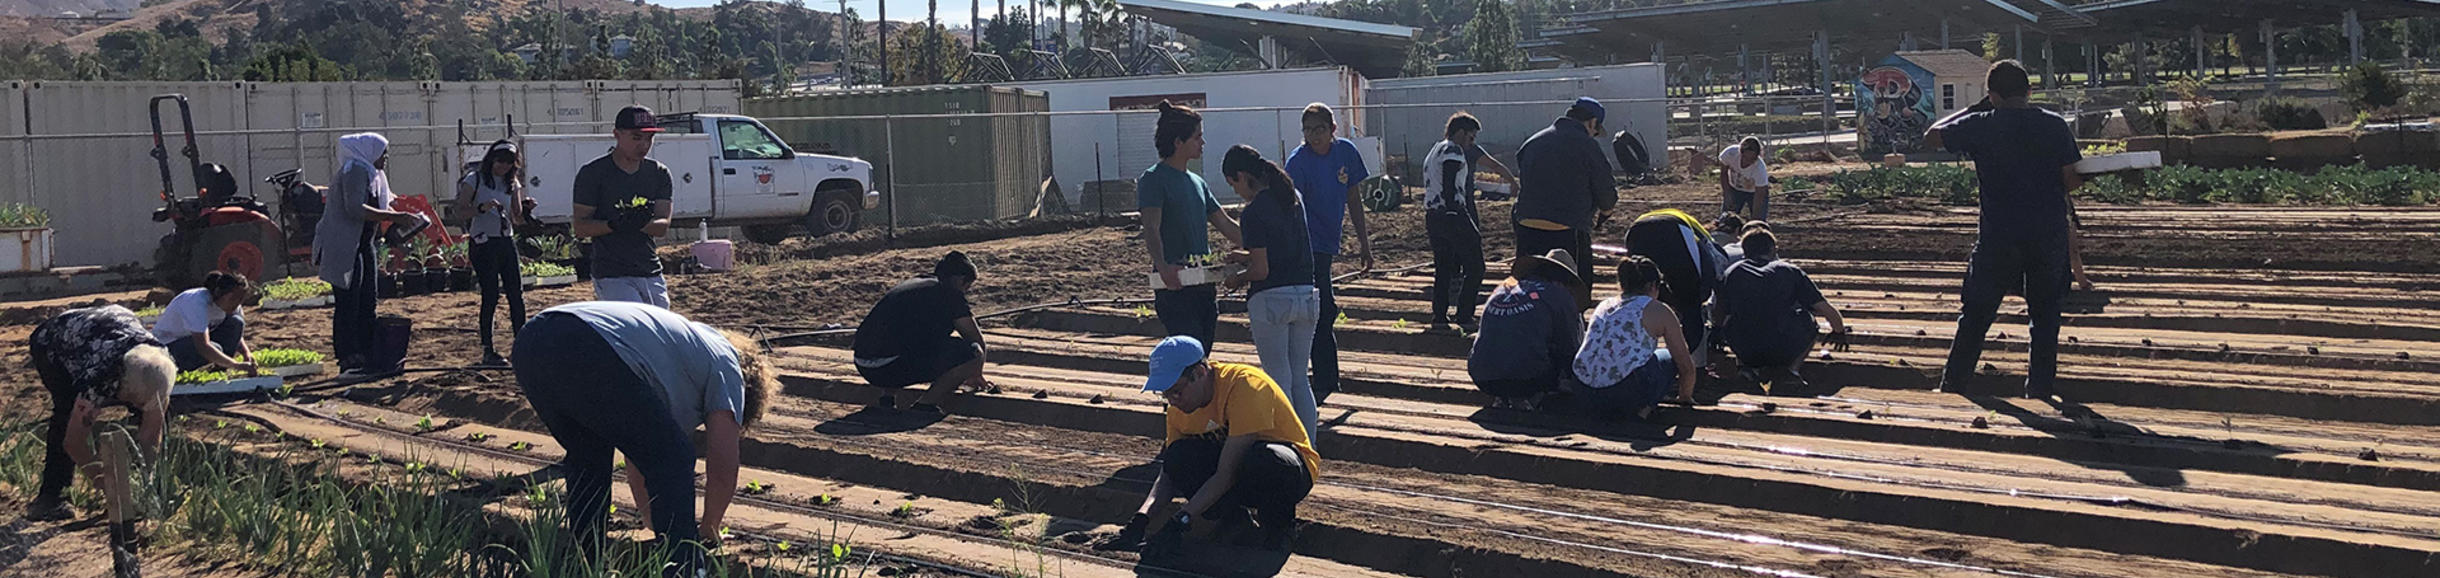 volunteers planting row crops